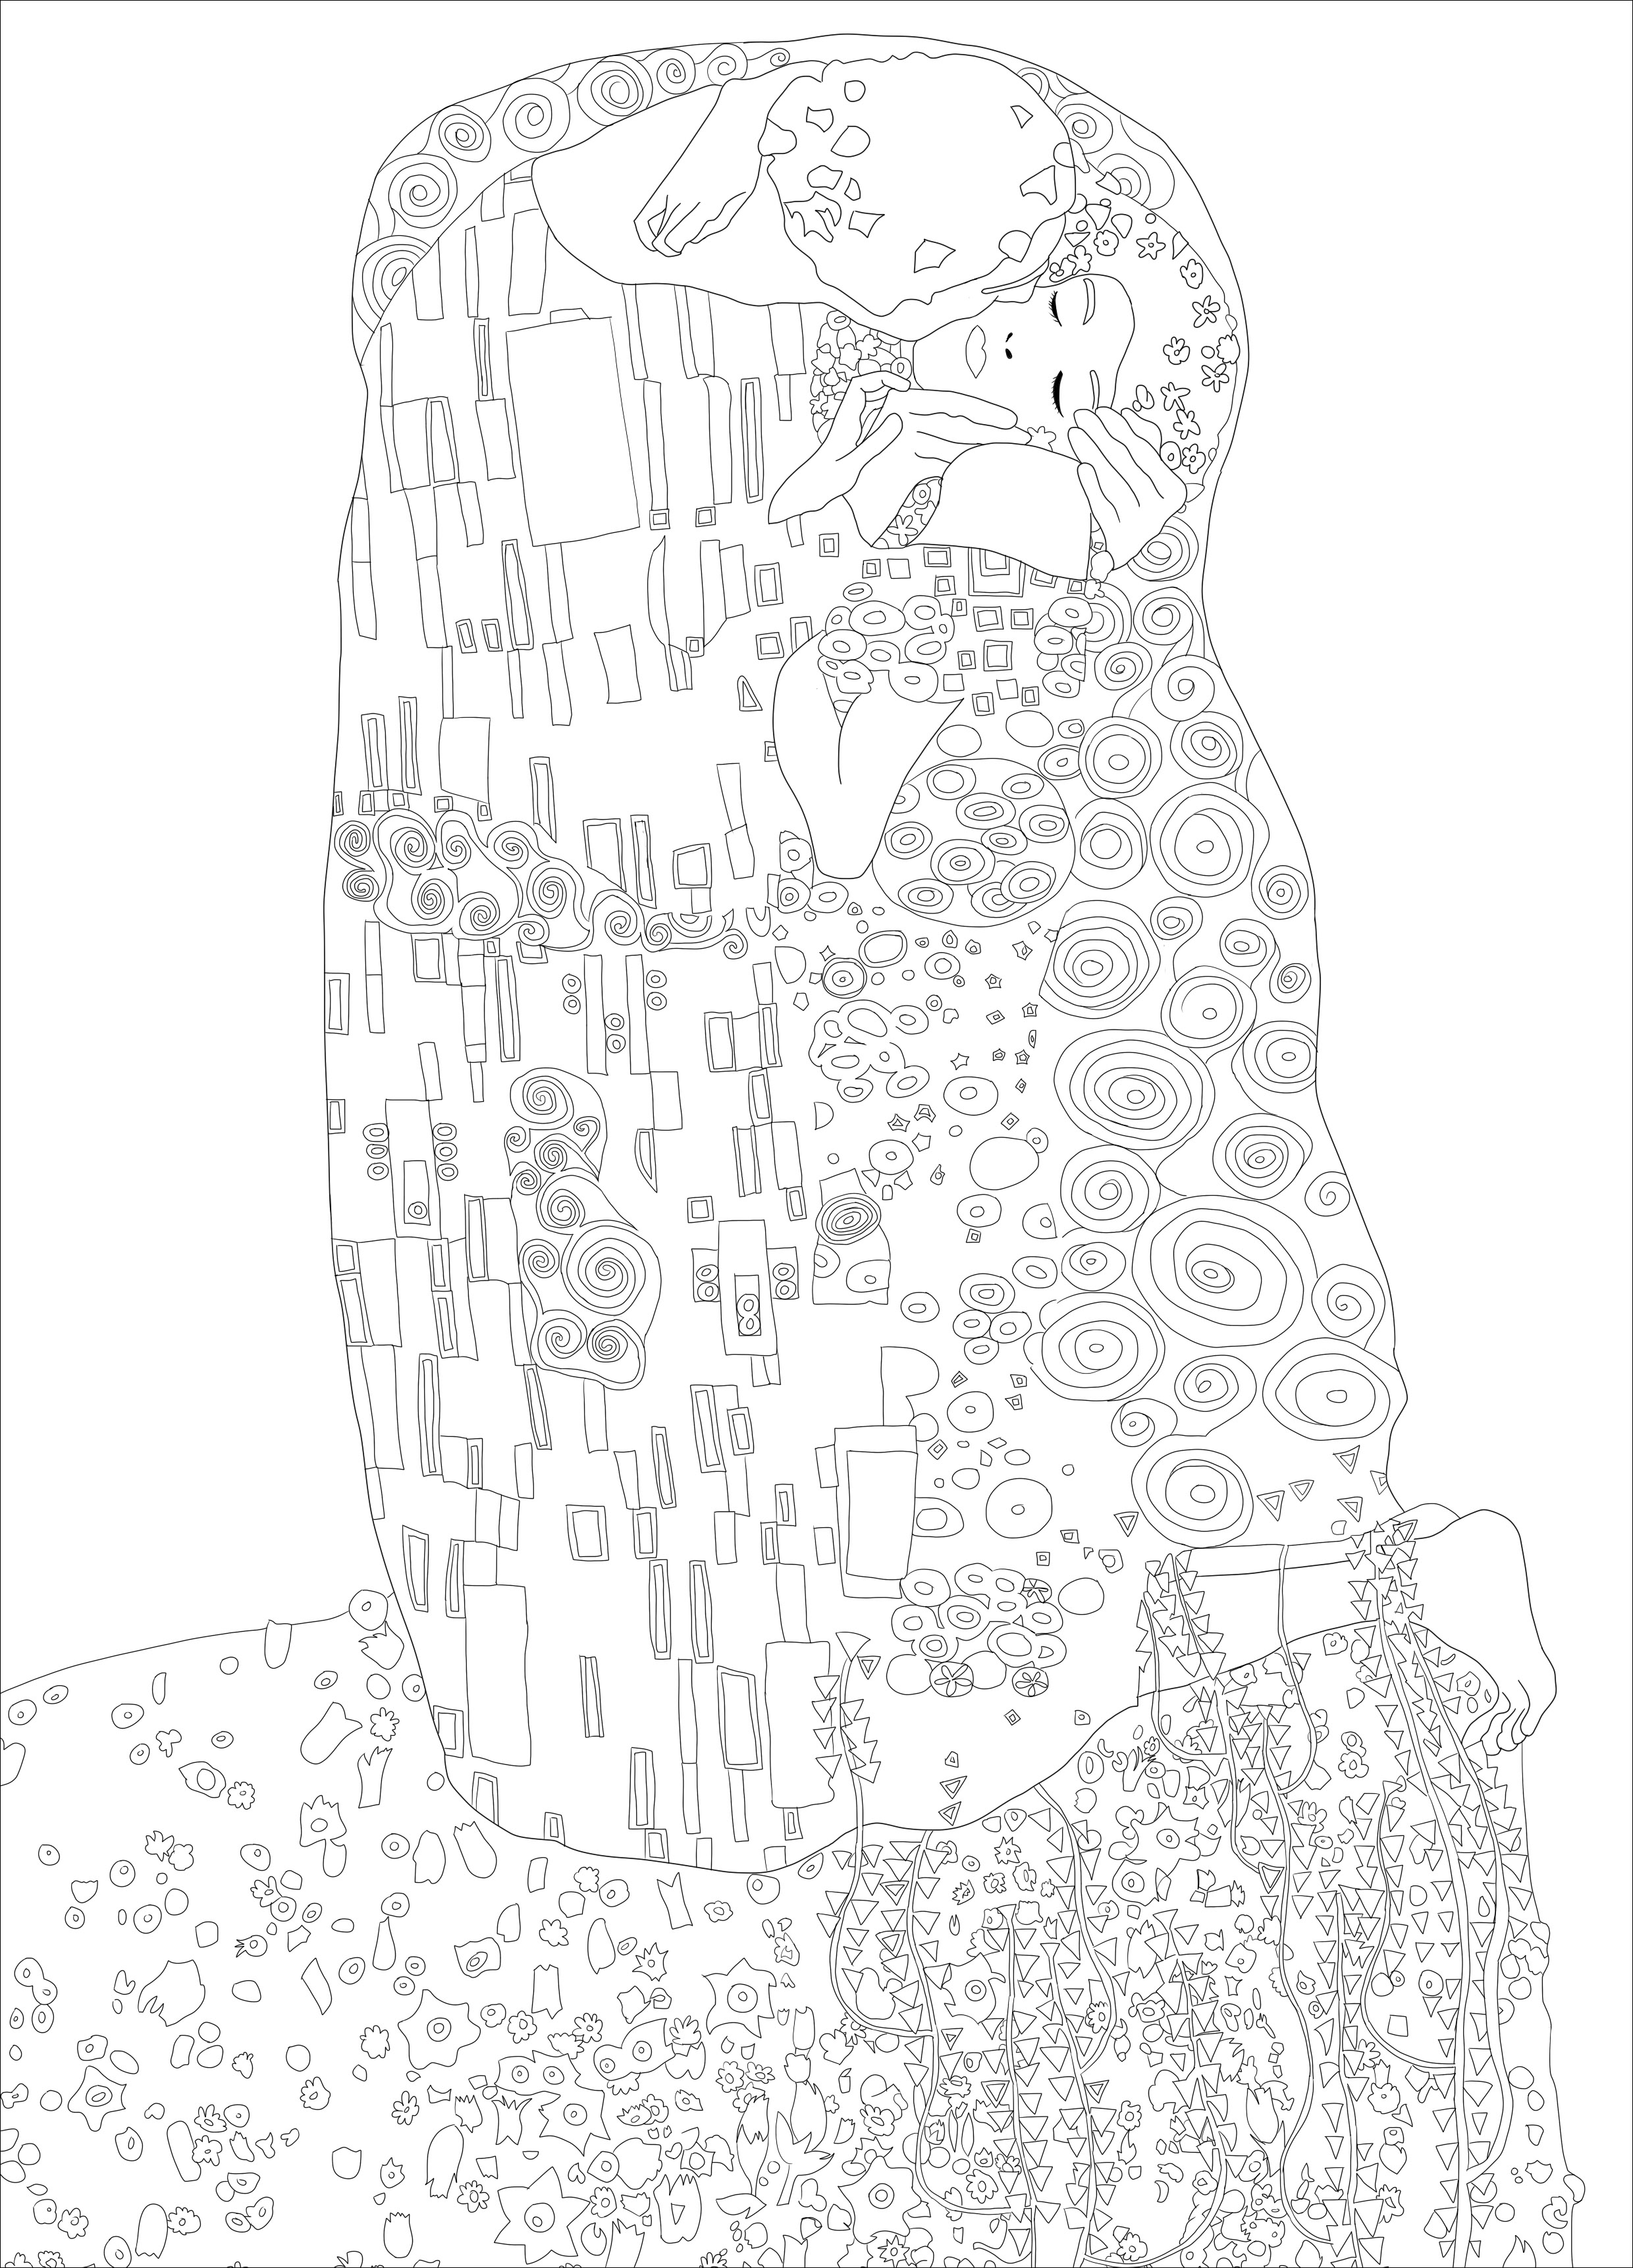 Página para colorir criada a partir do quadro 'O Beijo' de Gustav Klimt. O quadro é considerado uma obra-prima do movimento Art Nouveau e é uma das obras mais populares de Klimt. Encontra-se atualmente no museu Österreichische Galerie Belvedere, em Viena, Áustria. A pintura é conhecida pelo seu carácter sensual e erótico e pela utilização de folha de ouro e outros elementos decorativos na composição, Artista : Ji. M